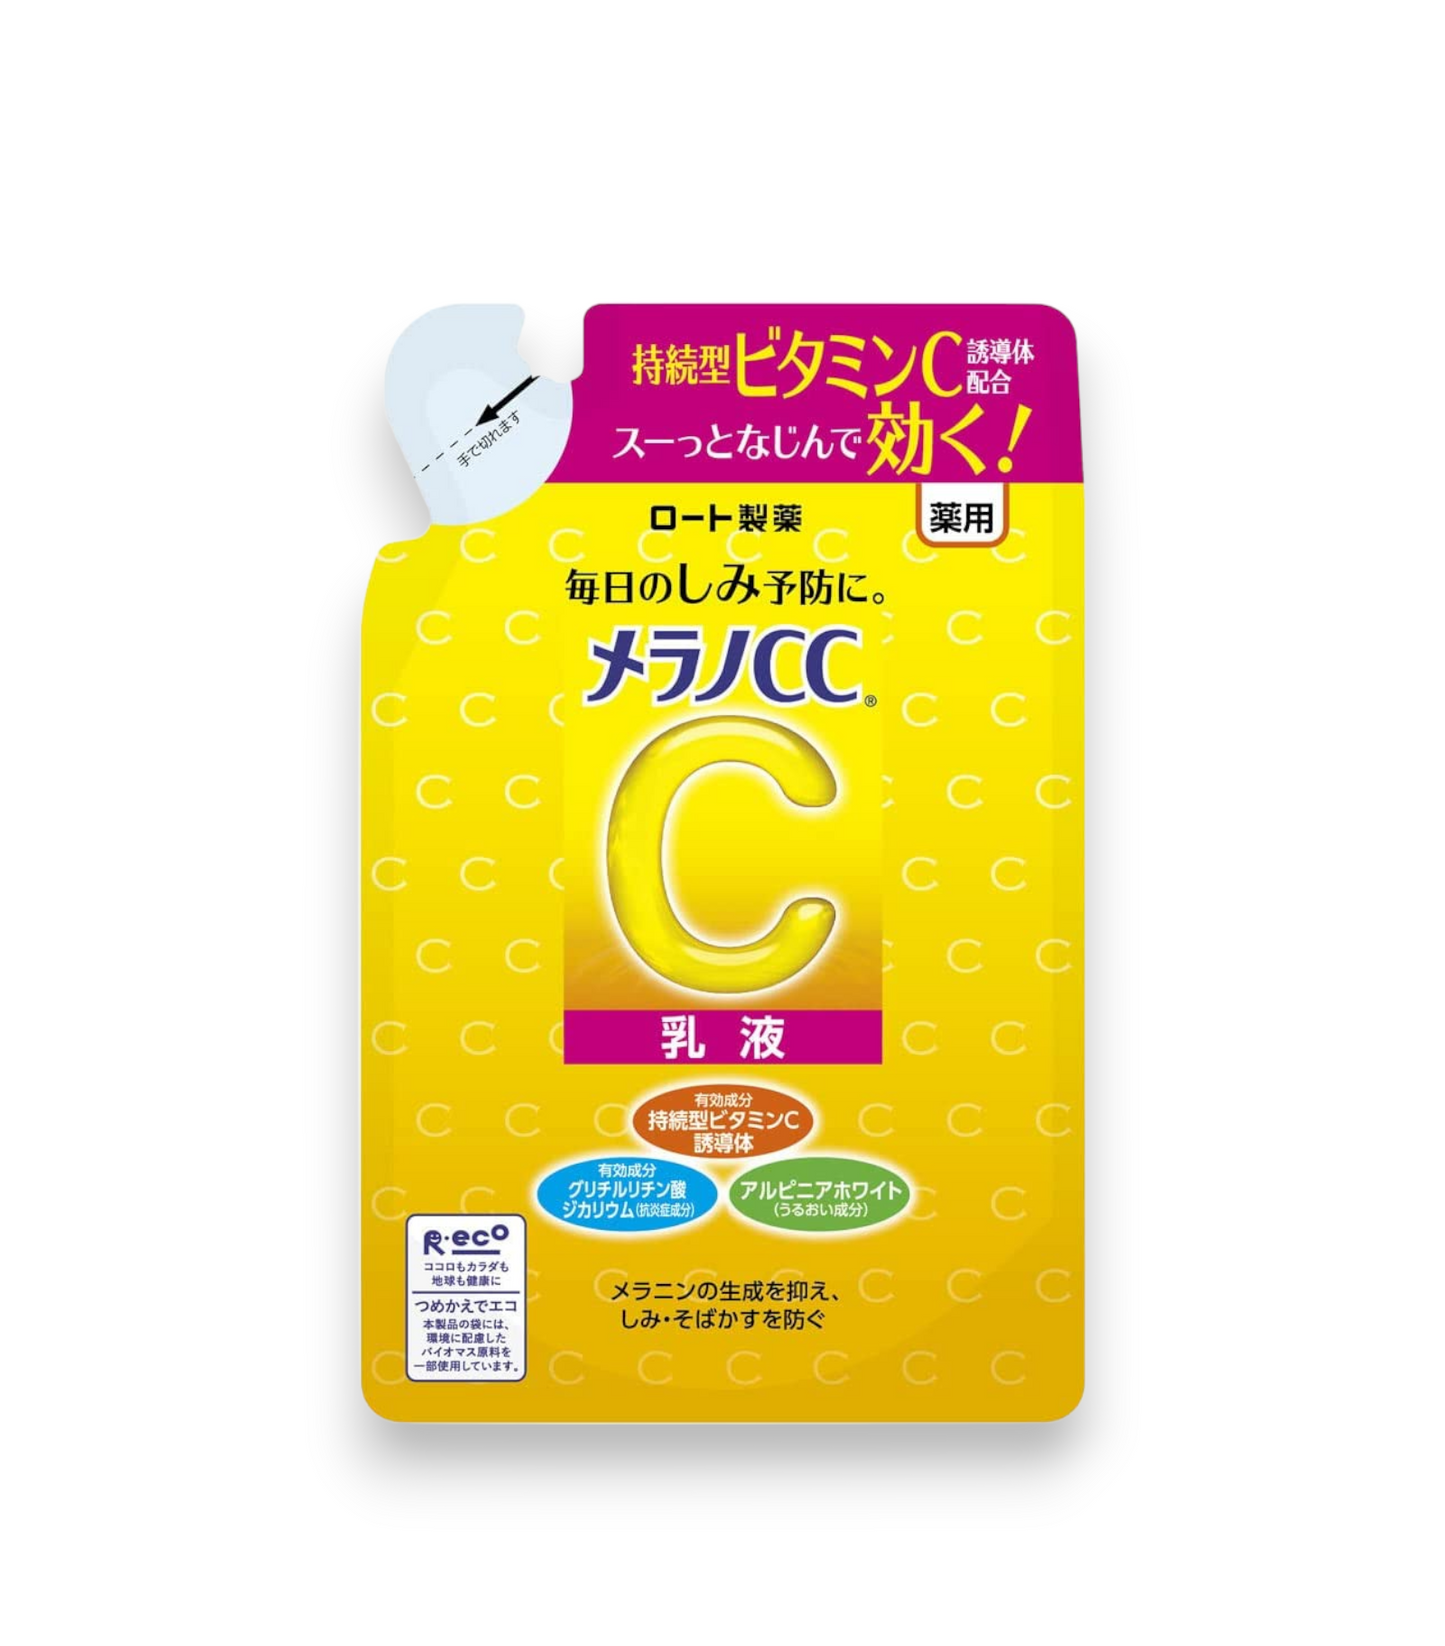 Melano CC Stain Prevention Whitening Milky Lotion - Recharge - 120ml  : Une lotion éclaircissante pour prévenir les taches et uniformiser le teint